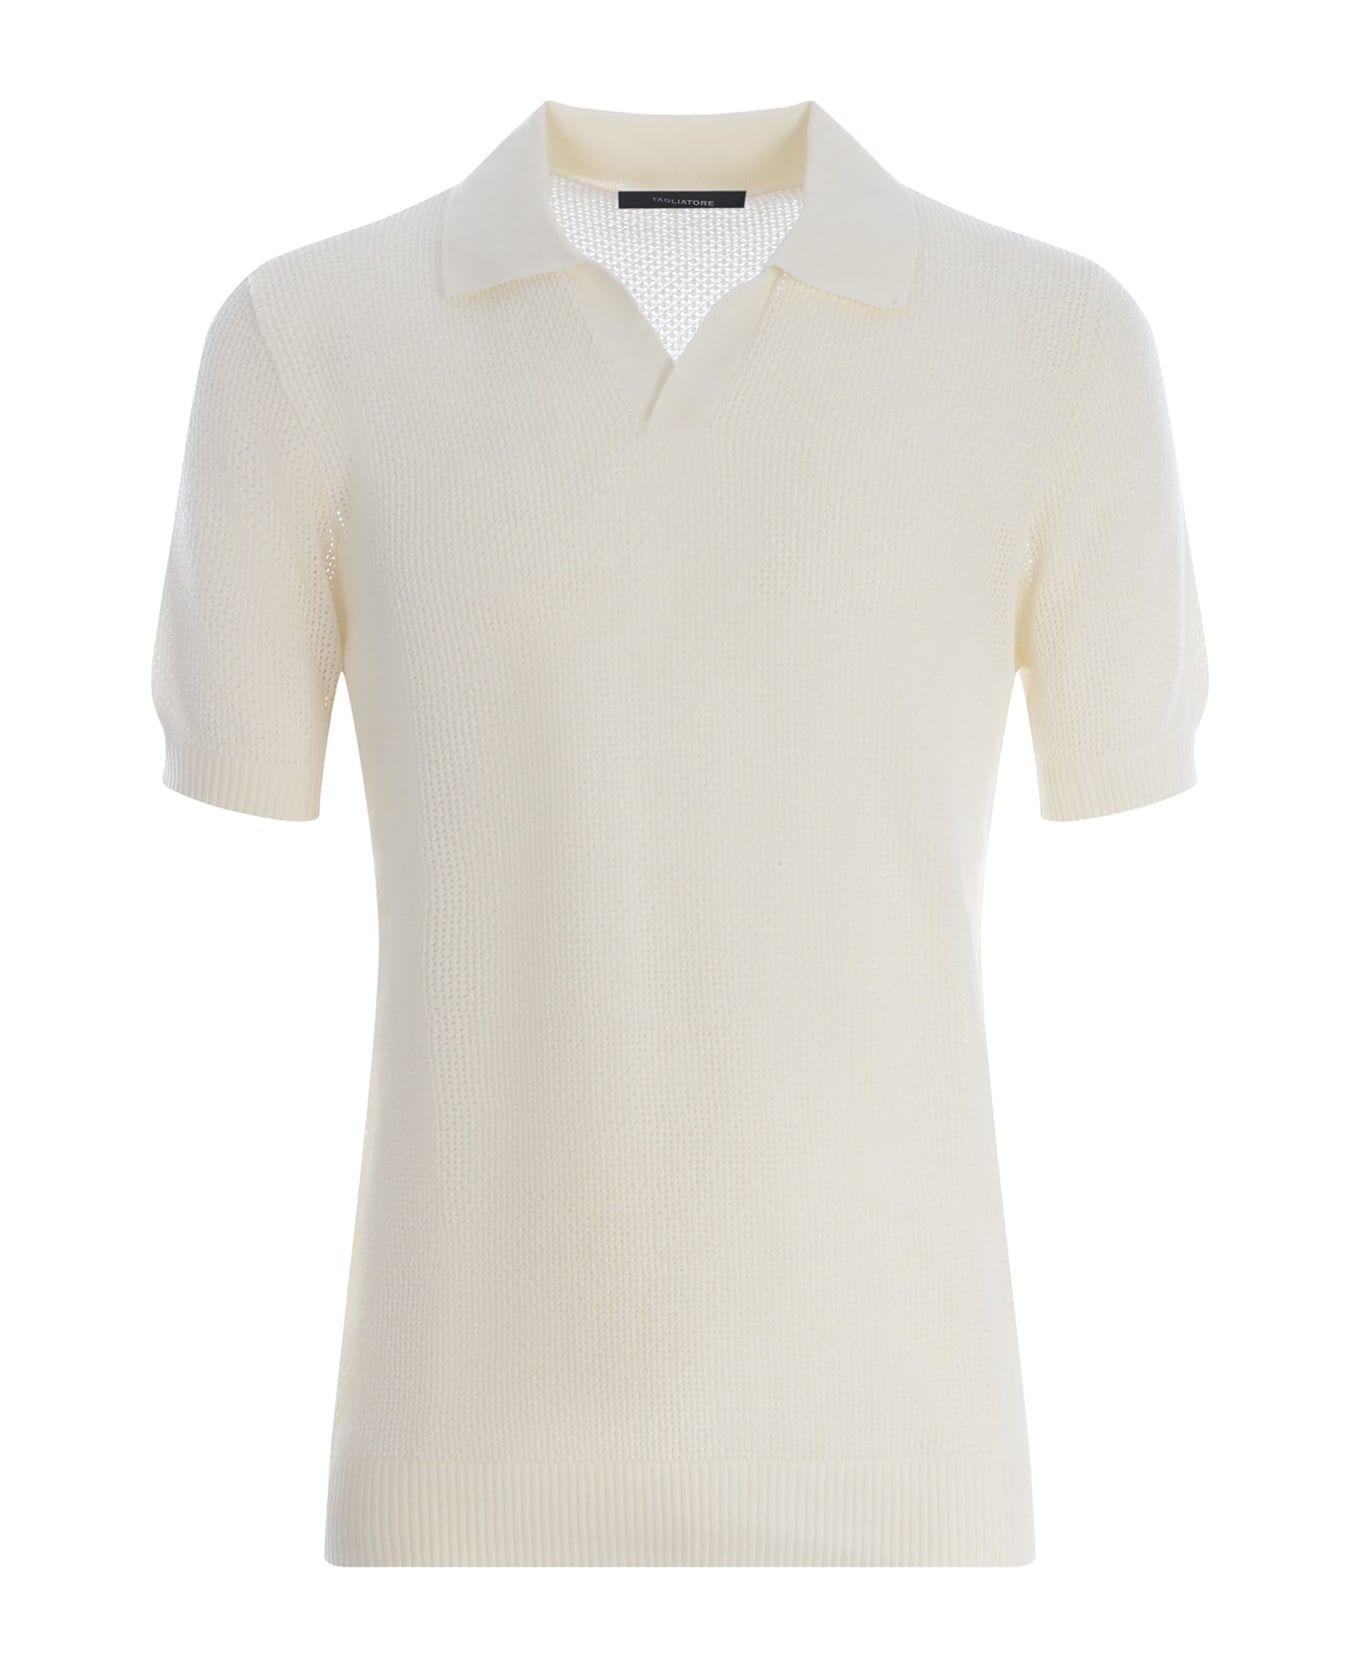 Tagliatore Polo Shirt Tagliatore Made Of Cotton Thread - Off white